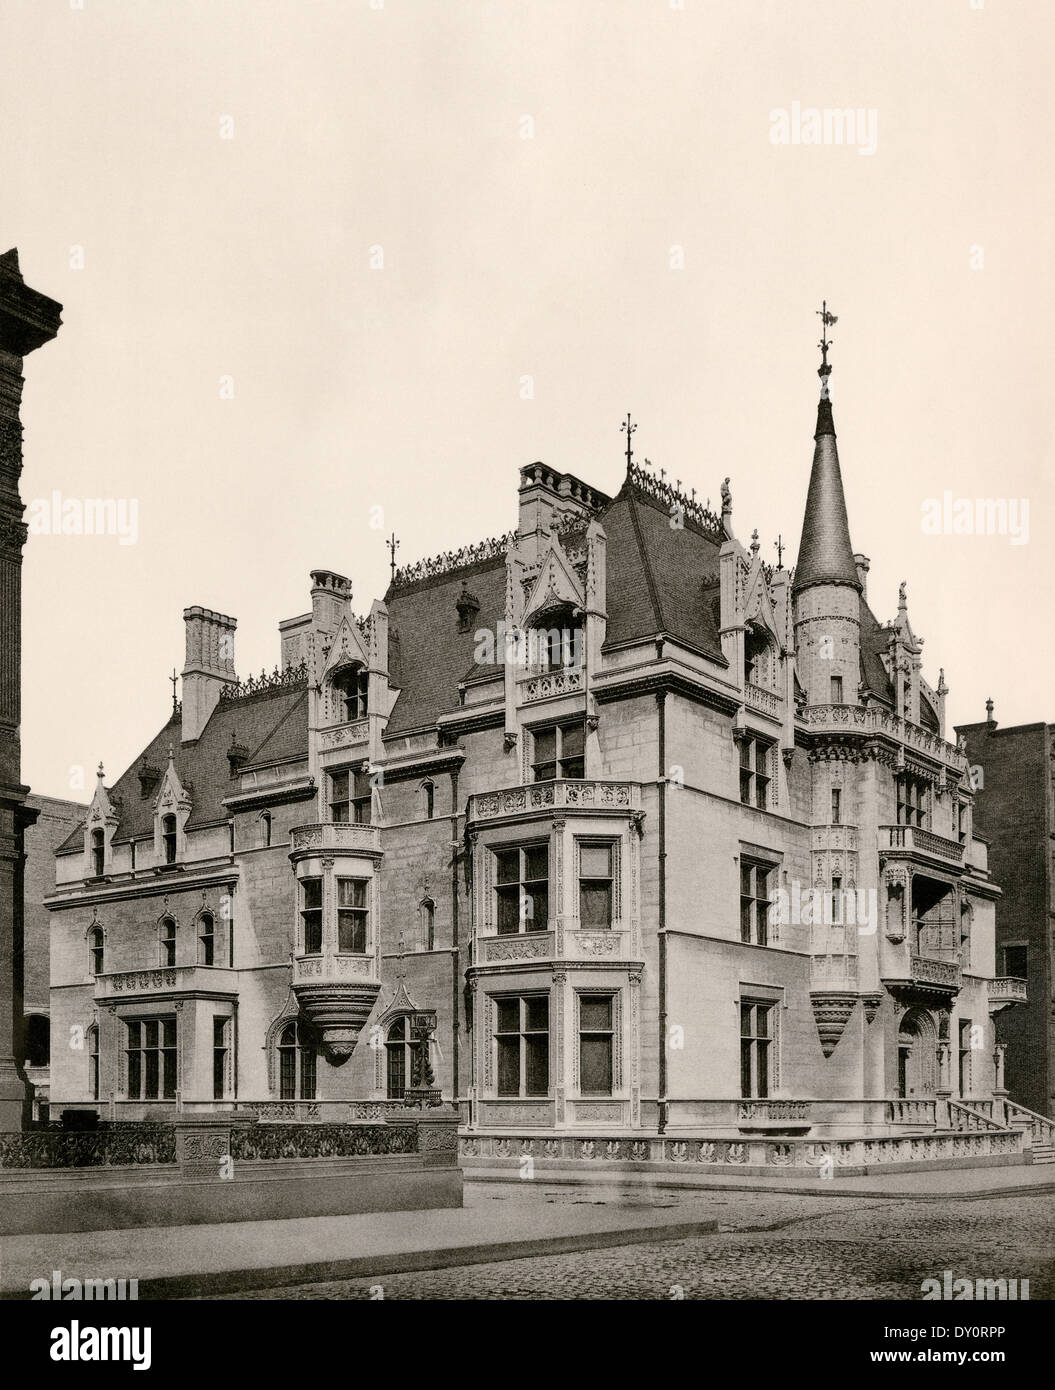 Haus von William K. Vanderbilt, von Richard Morris Hunt, Fifth Avenue, New York City, 1886 konzipiert. Foto Stockfoto